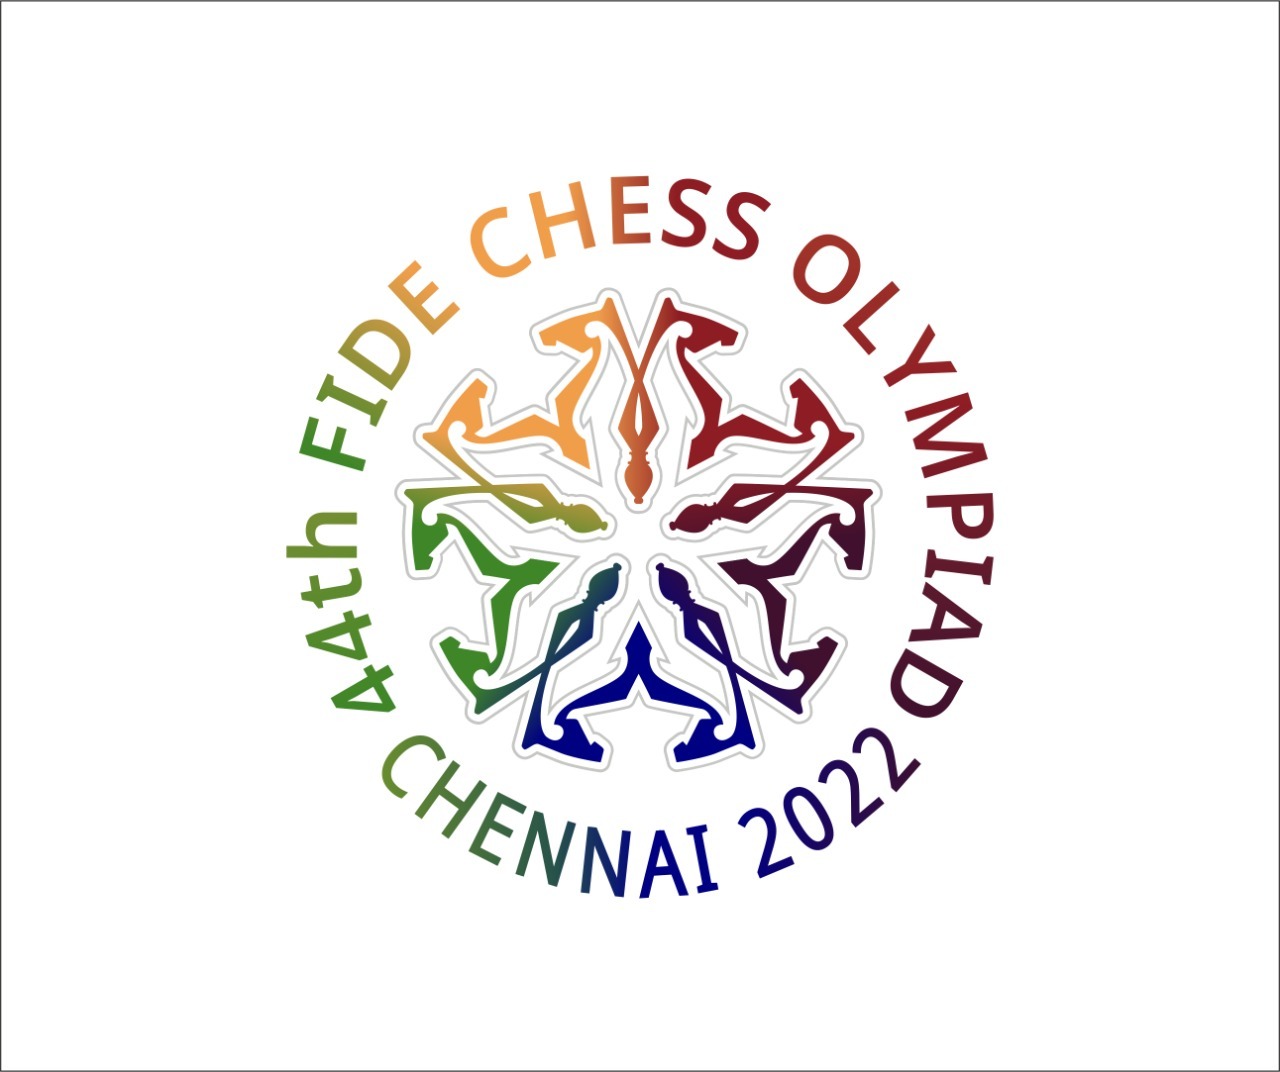 Chennai Olympiad 8: Gukesh crushes Caruana